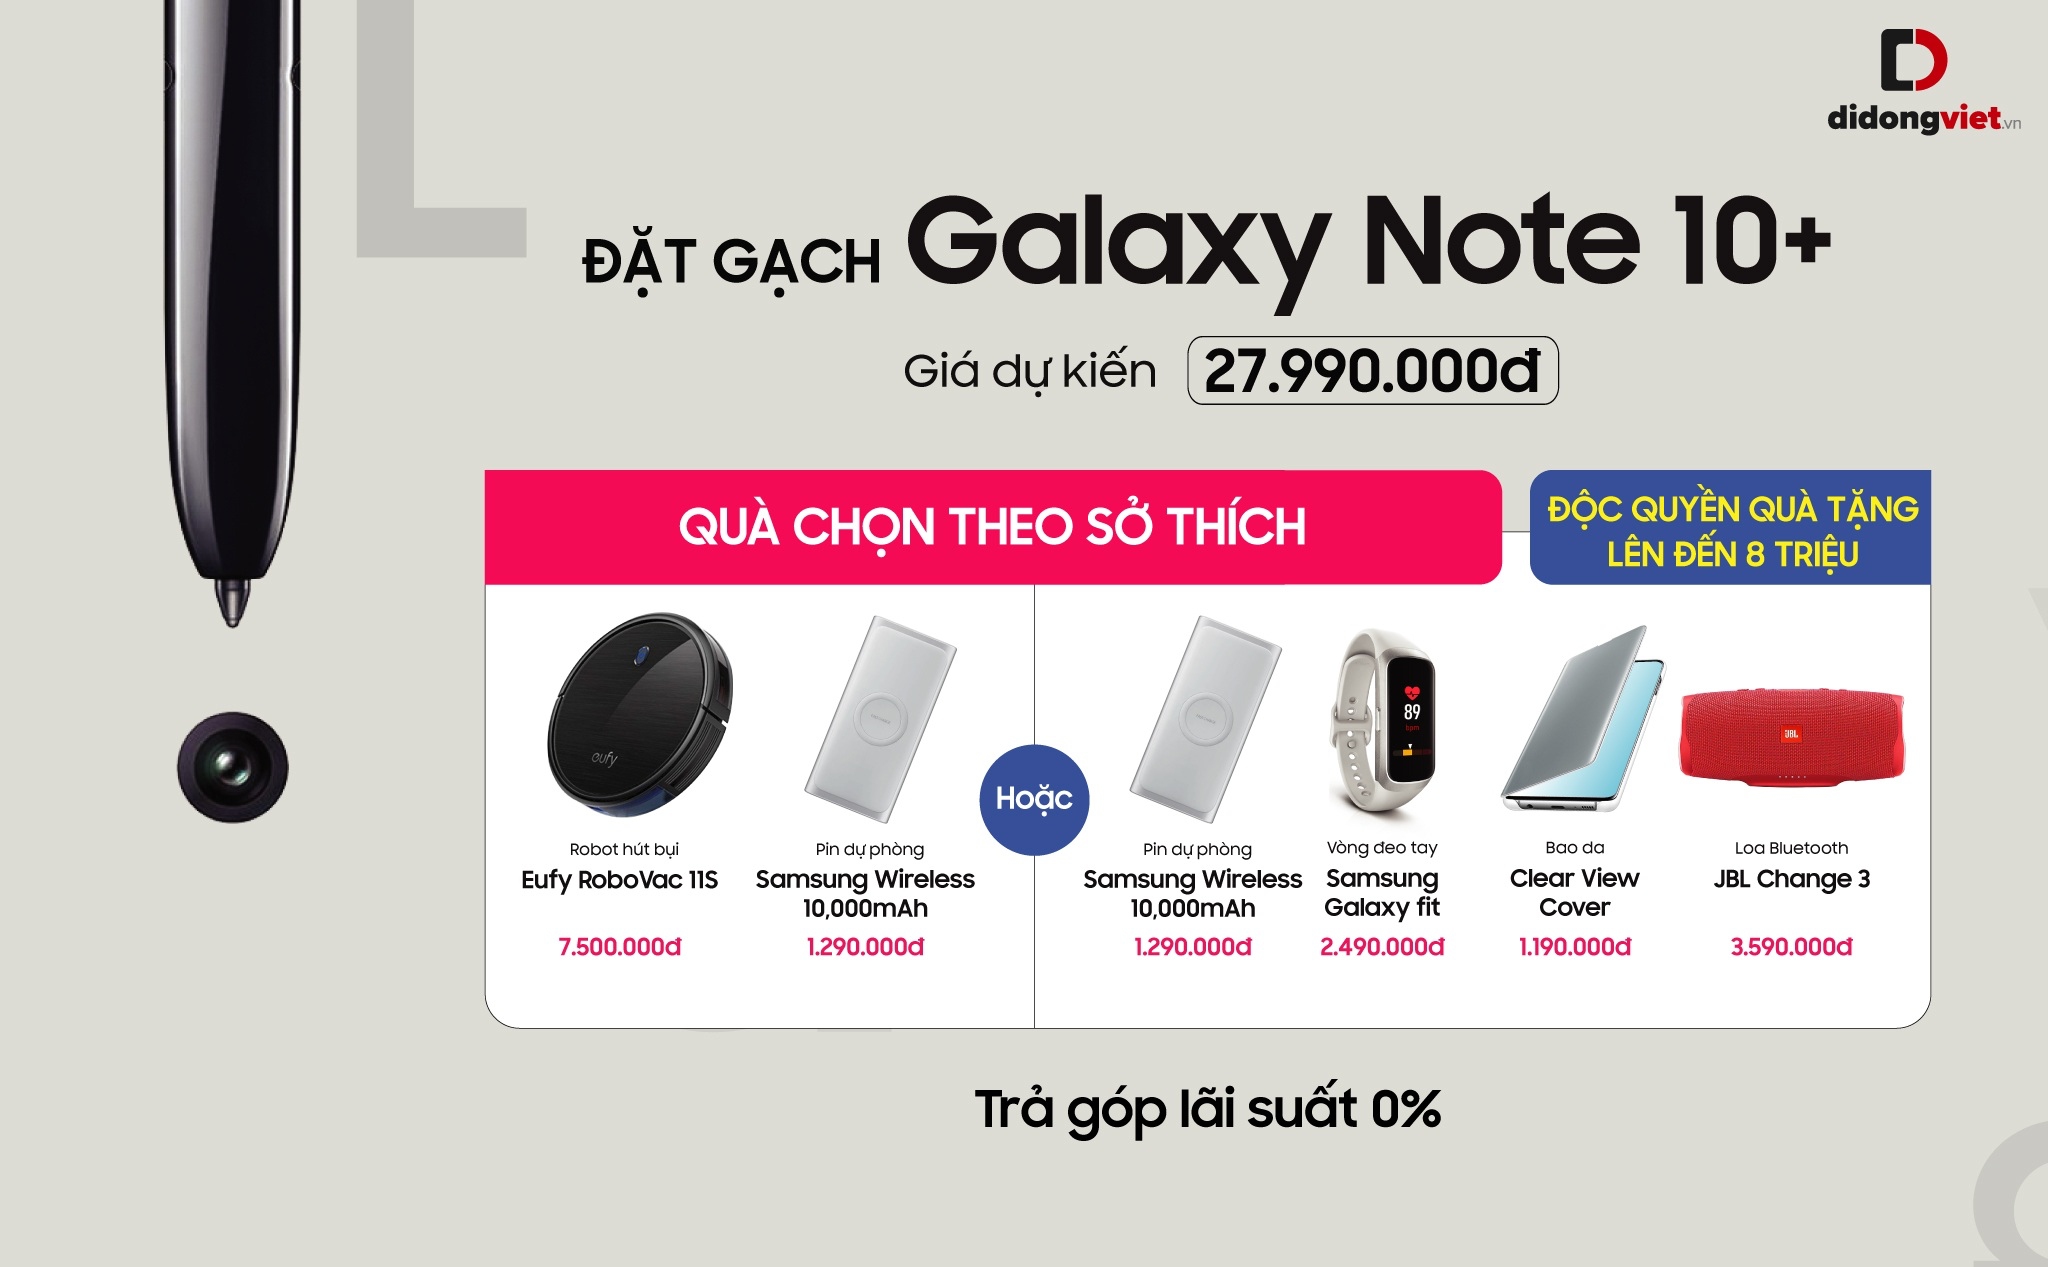 [QC] Đặt gạch Galaxy Note 10 tại Di Động Việt, nhận quà cực xịn lên đến 8 triệu đồng